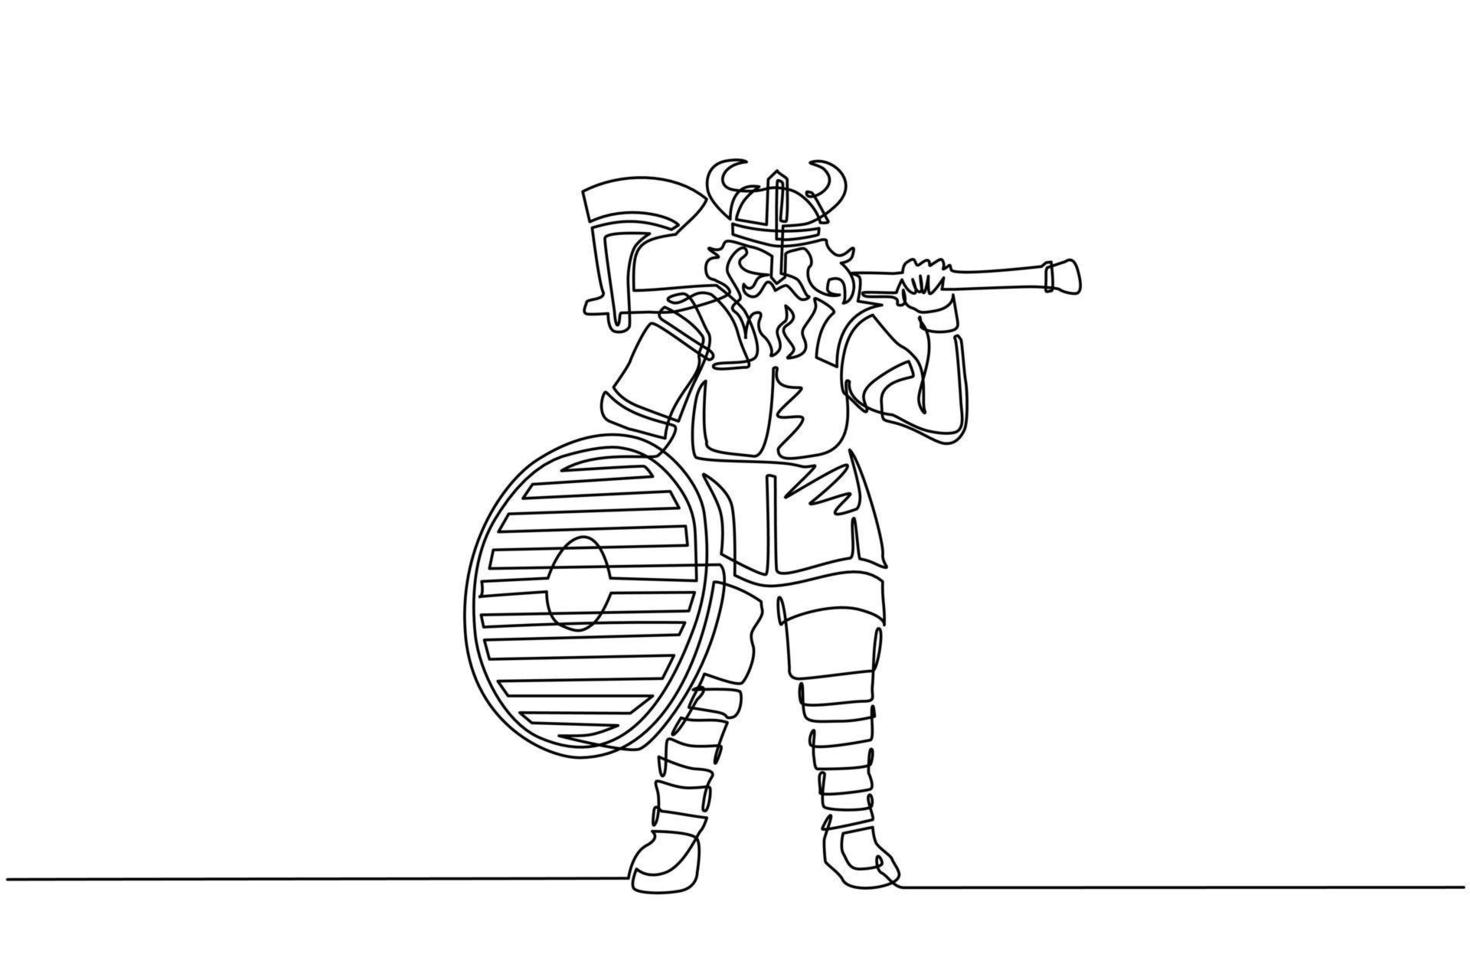 enkele doorlopende lijntekening norseman viking krijger raider barbaar met gehoornde helm met baard met bijl en schild op geïsoleerde witte achtergrond. één lijn tekenen ontwerp vectorillustratie vector